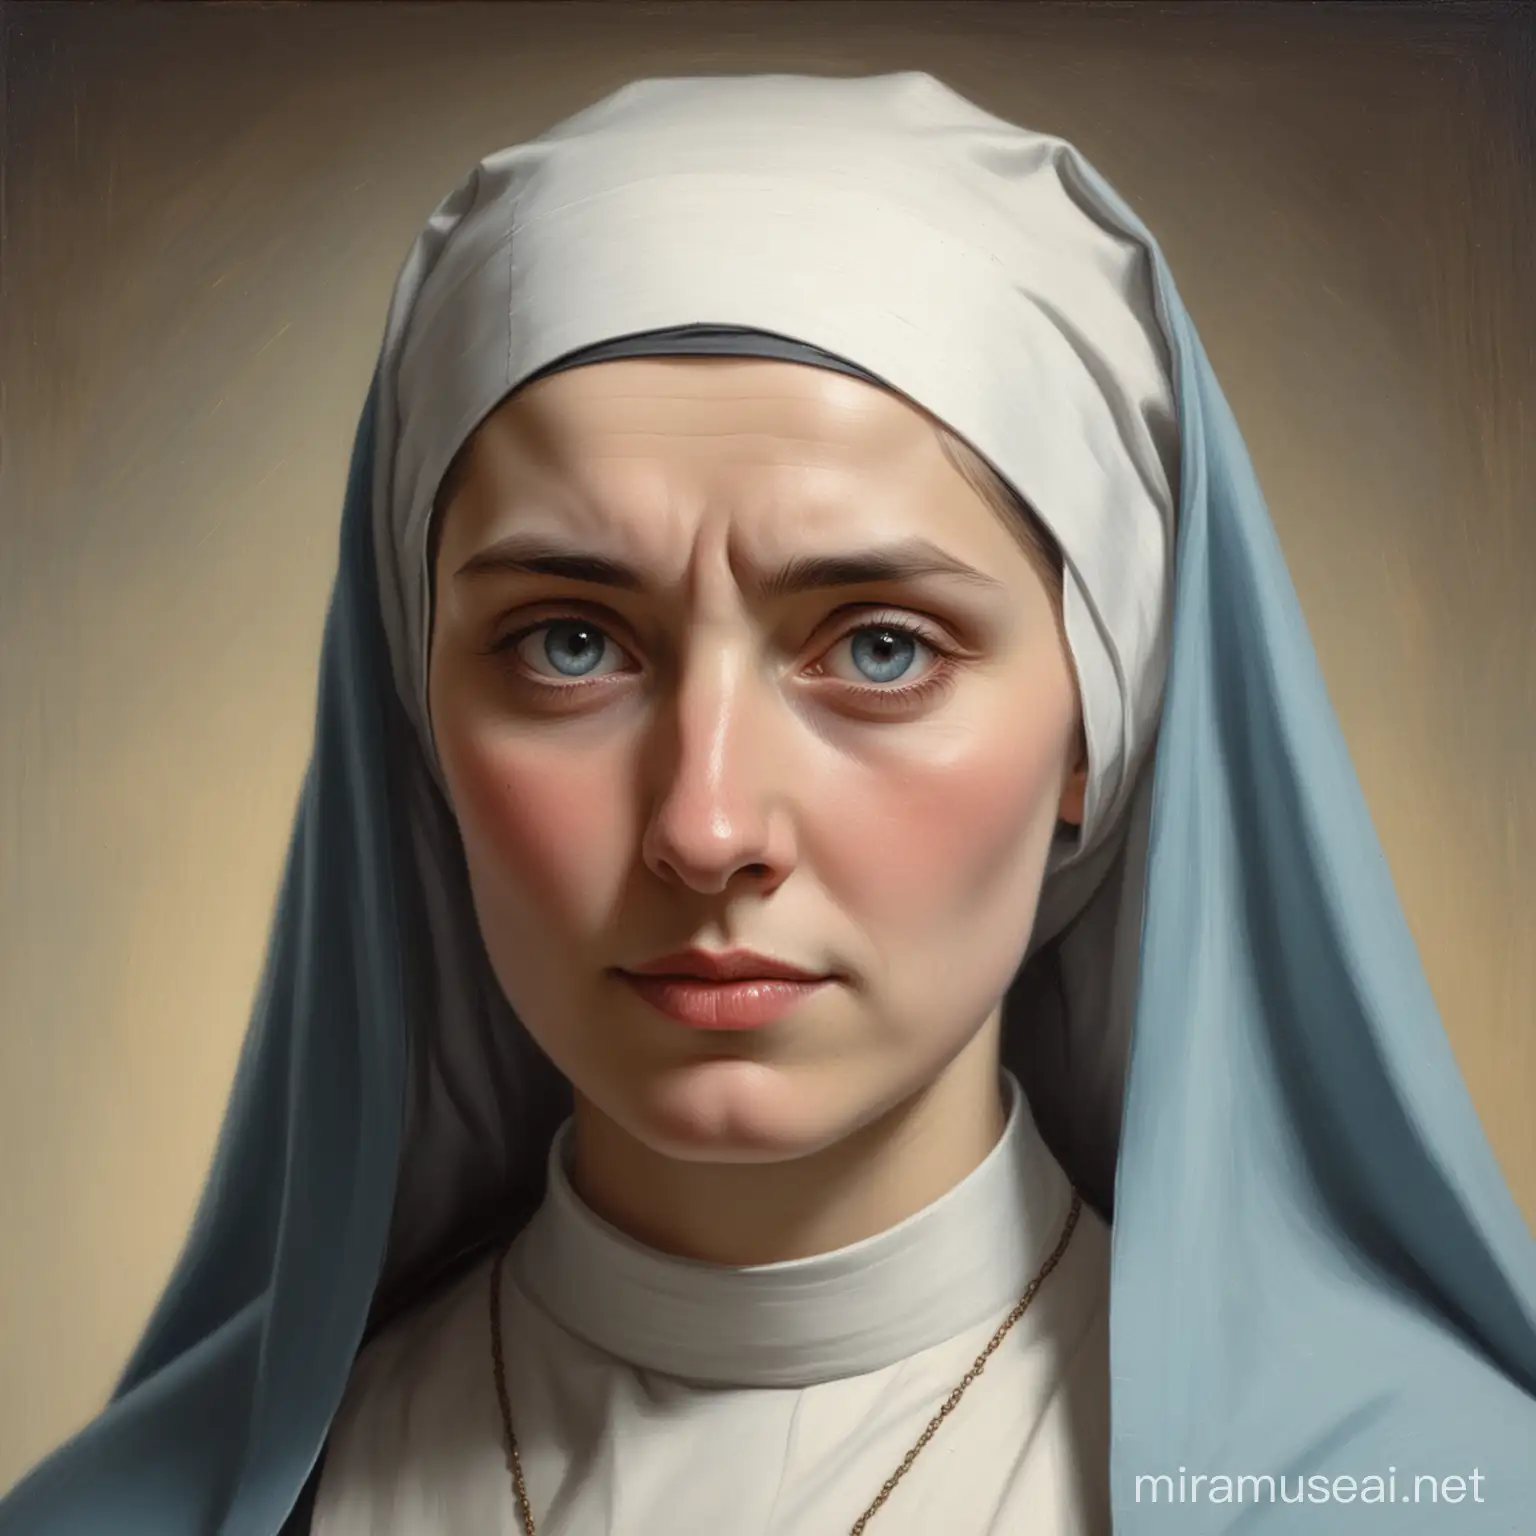 BlueEyed Nun Portrait by John Waterhouse